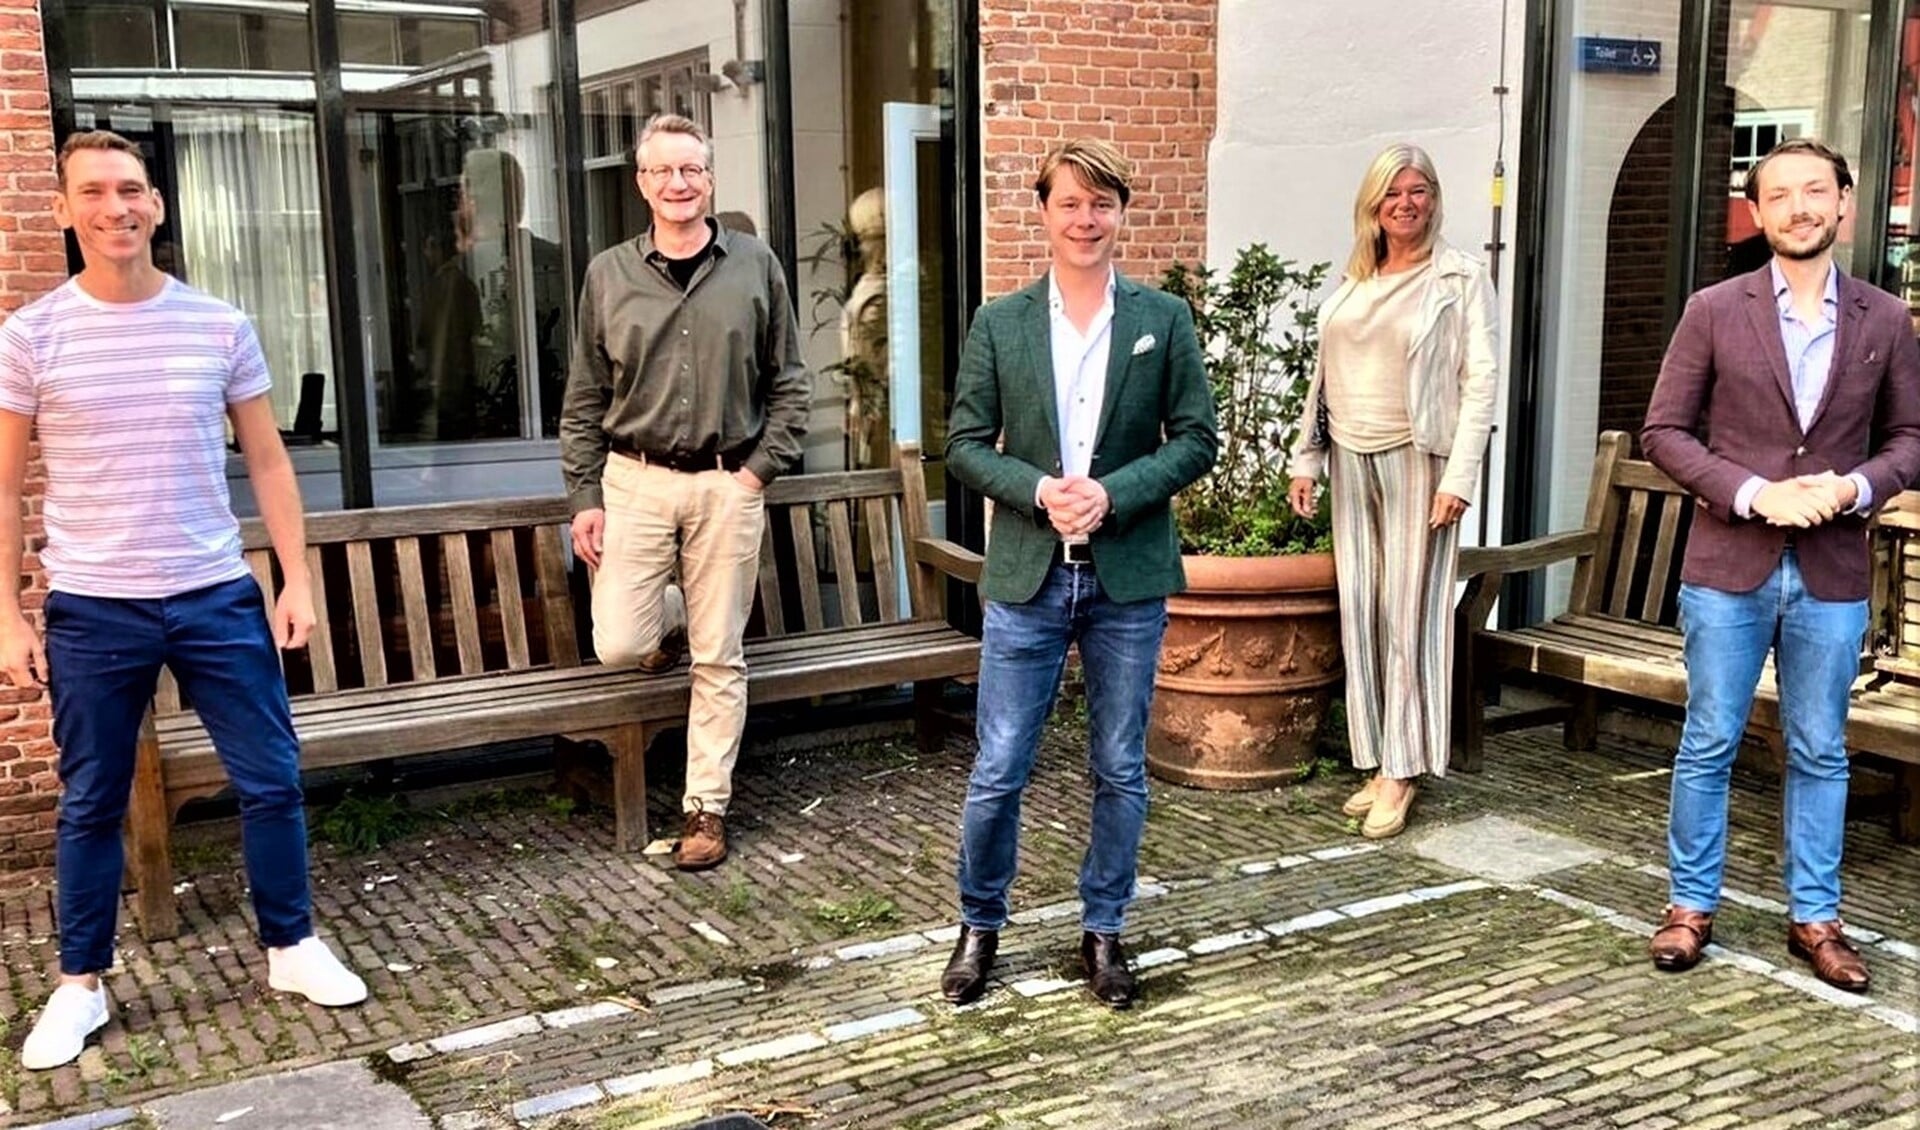 Fractievoorzitters van de nieuwe coalitie met v.l.n.r. Gijs Dupont (CDA), Kees Verschoor (CU/SGP), Jeroen van Rossum (GroenLinks), Louise Kortman (VVD) en Jochem Streefkerk (PvdA).